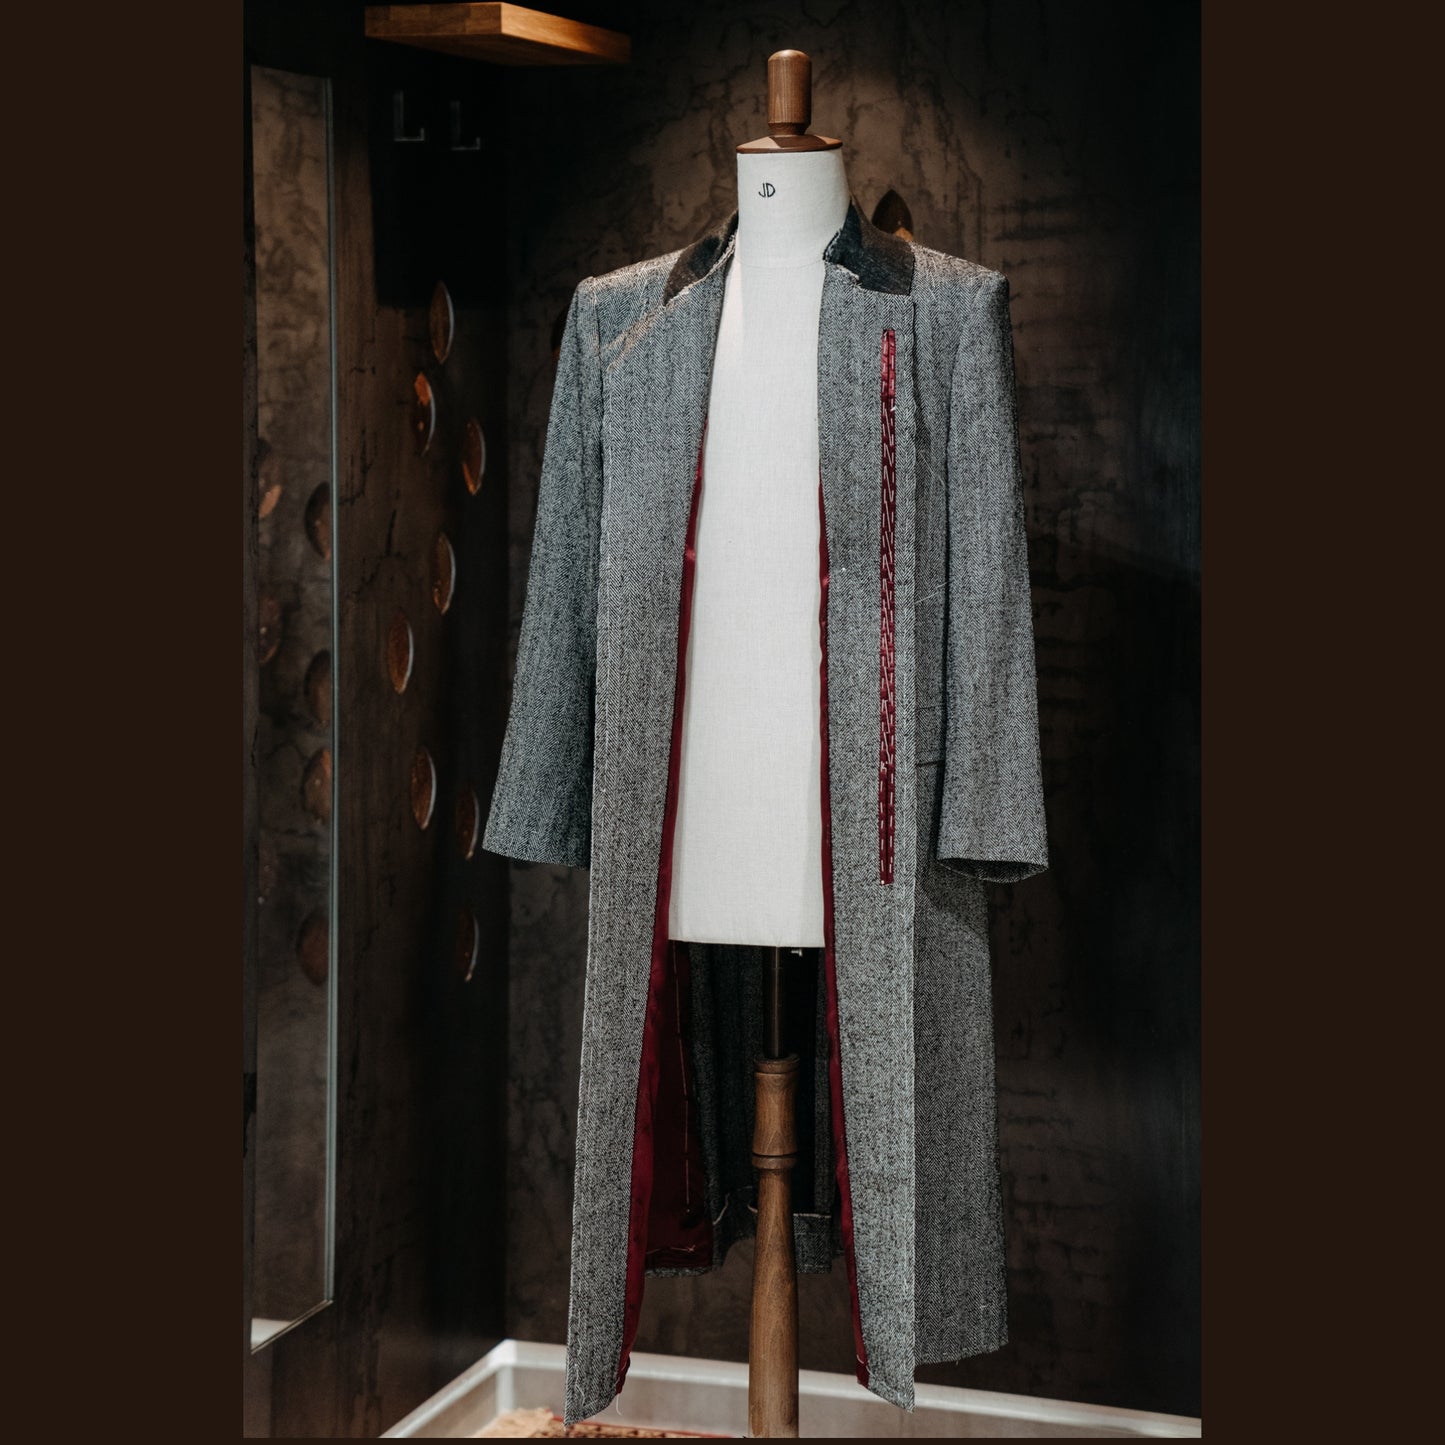 Pánský kabát na míru dle vlastního návrhu (poukaz) JDobias-tailoring